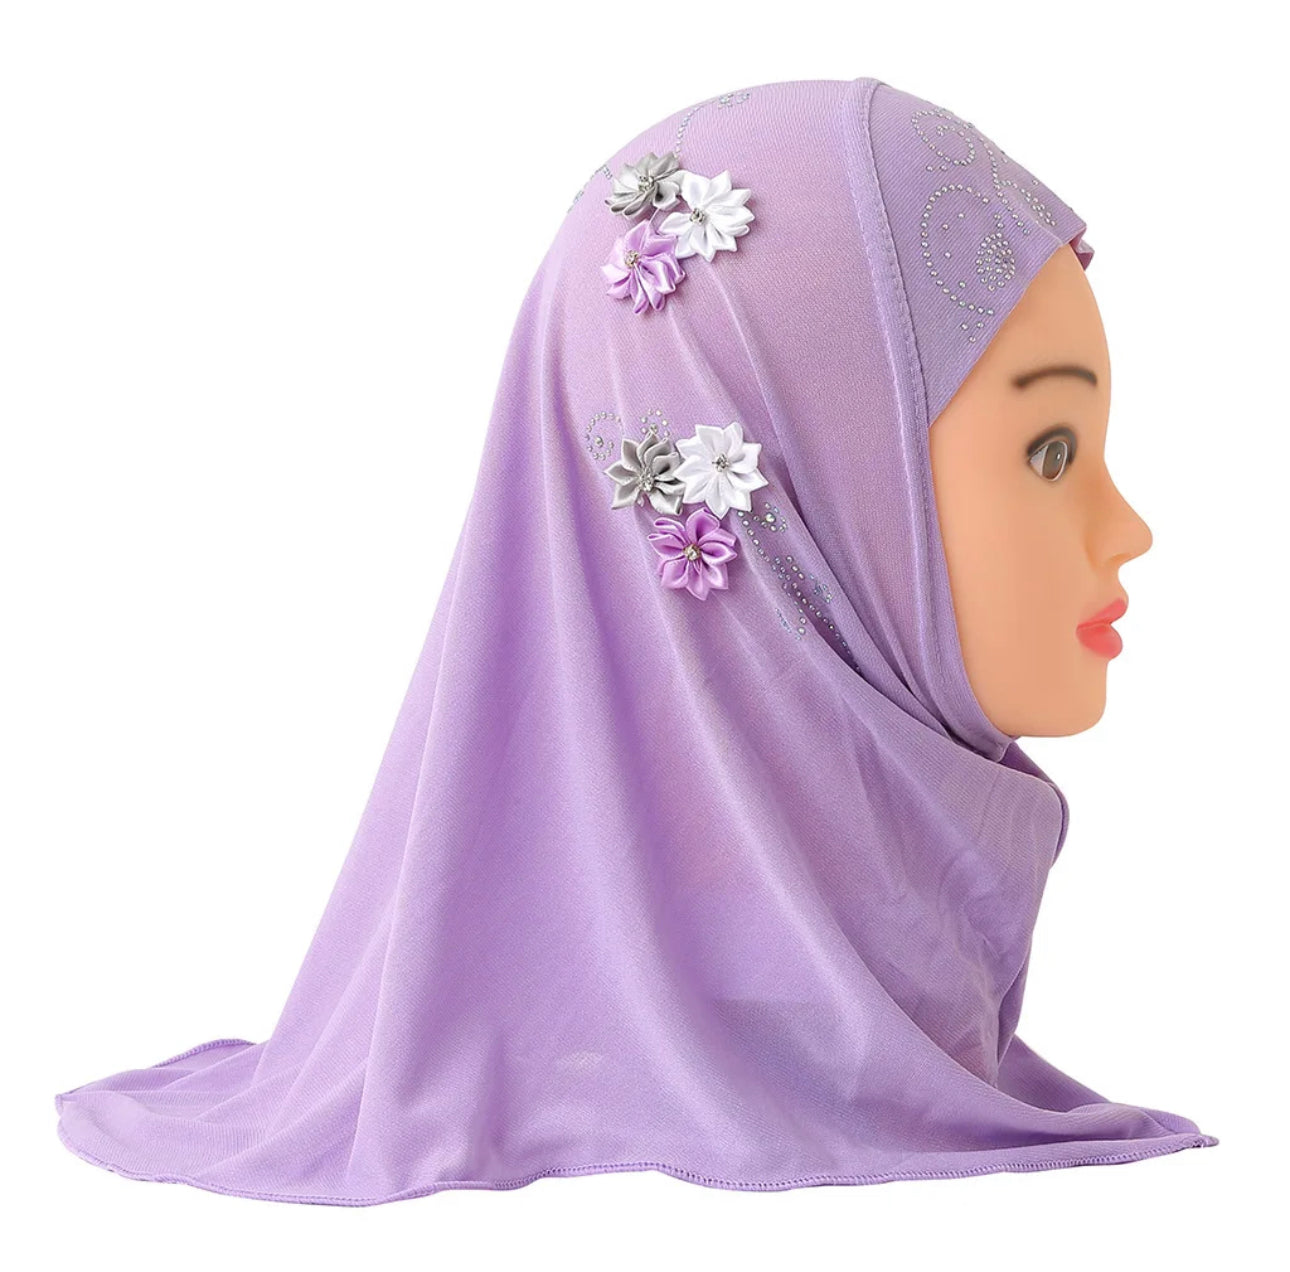 Little miss hijab - O'layah